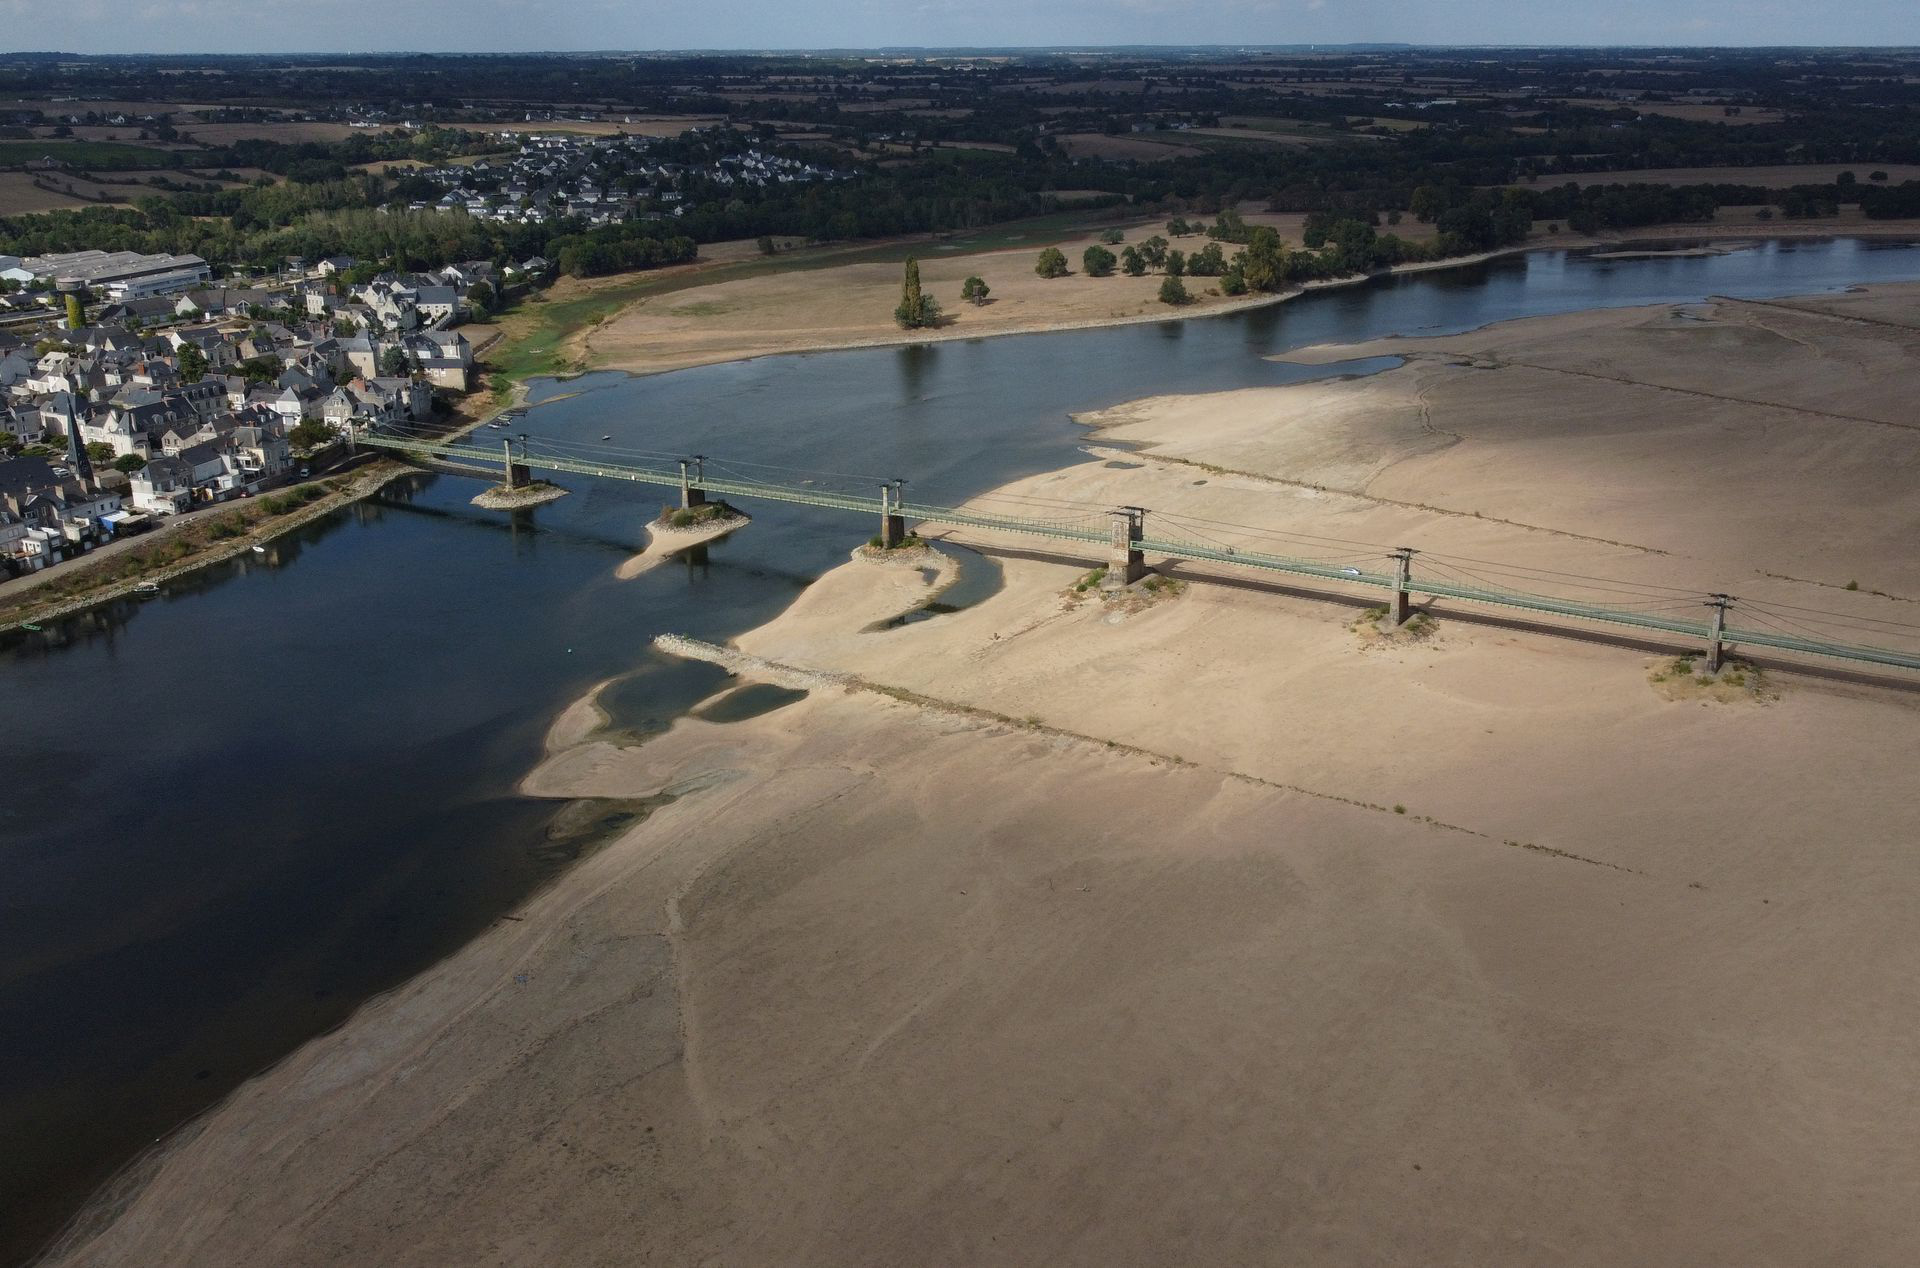 Pháp: Nước sông Loire xuống mức thấp lịch sử, người dân có thể đi bộ qua lòng sông - Ảnh 3.